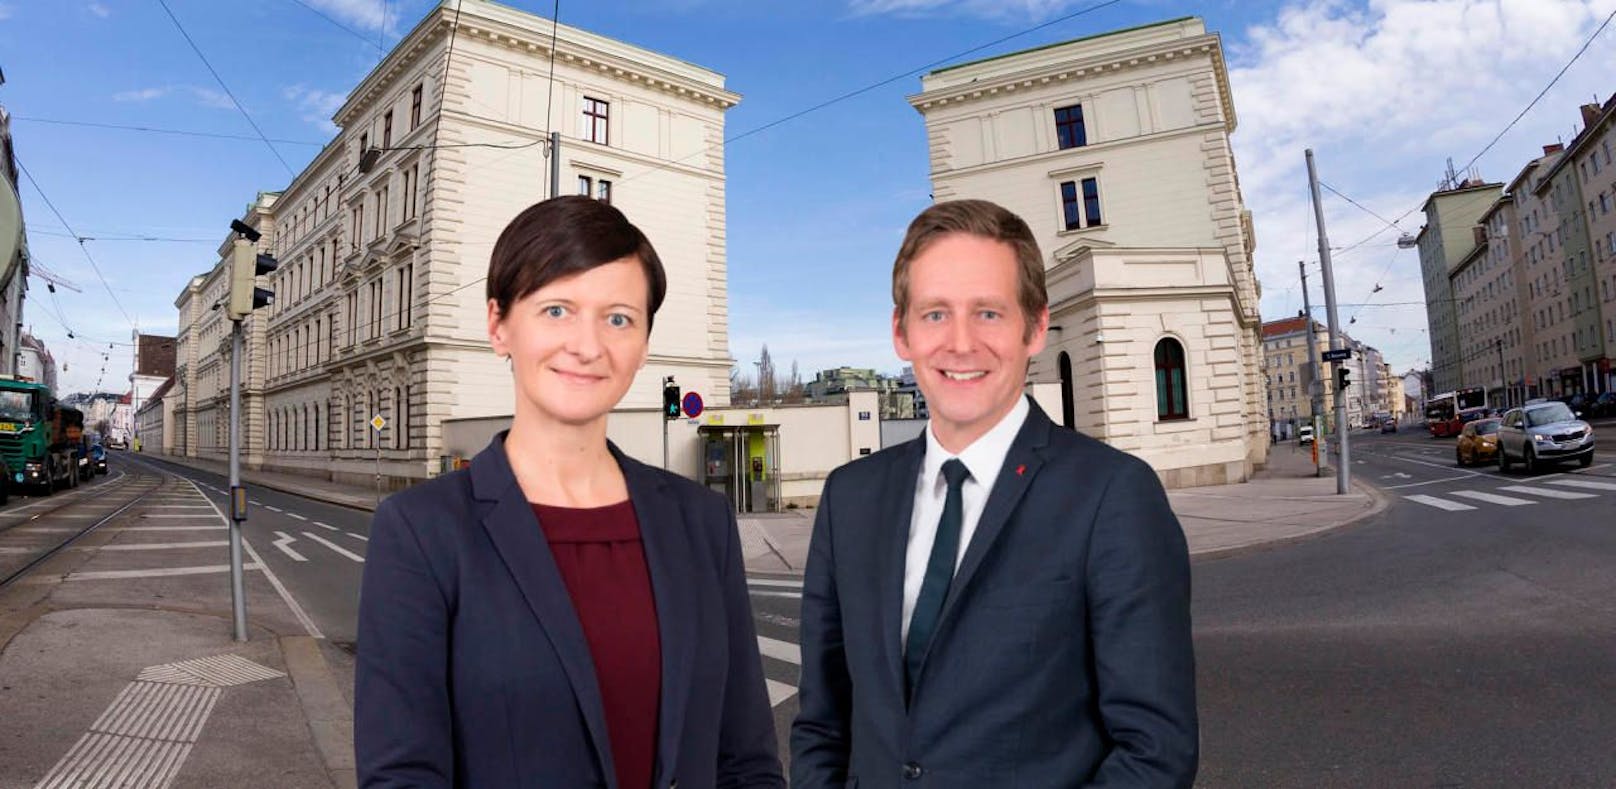 SPÖ-Abgeordnete Sabine Schatz und Jan Krainer sprechen in Linz über die BVT-Affäre.